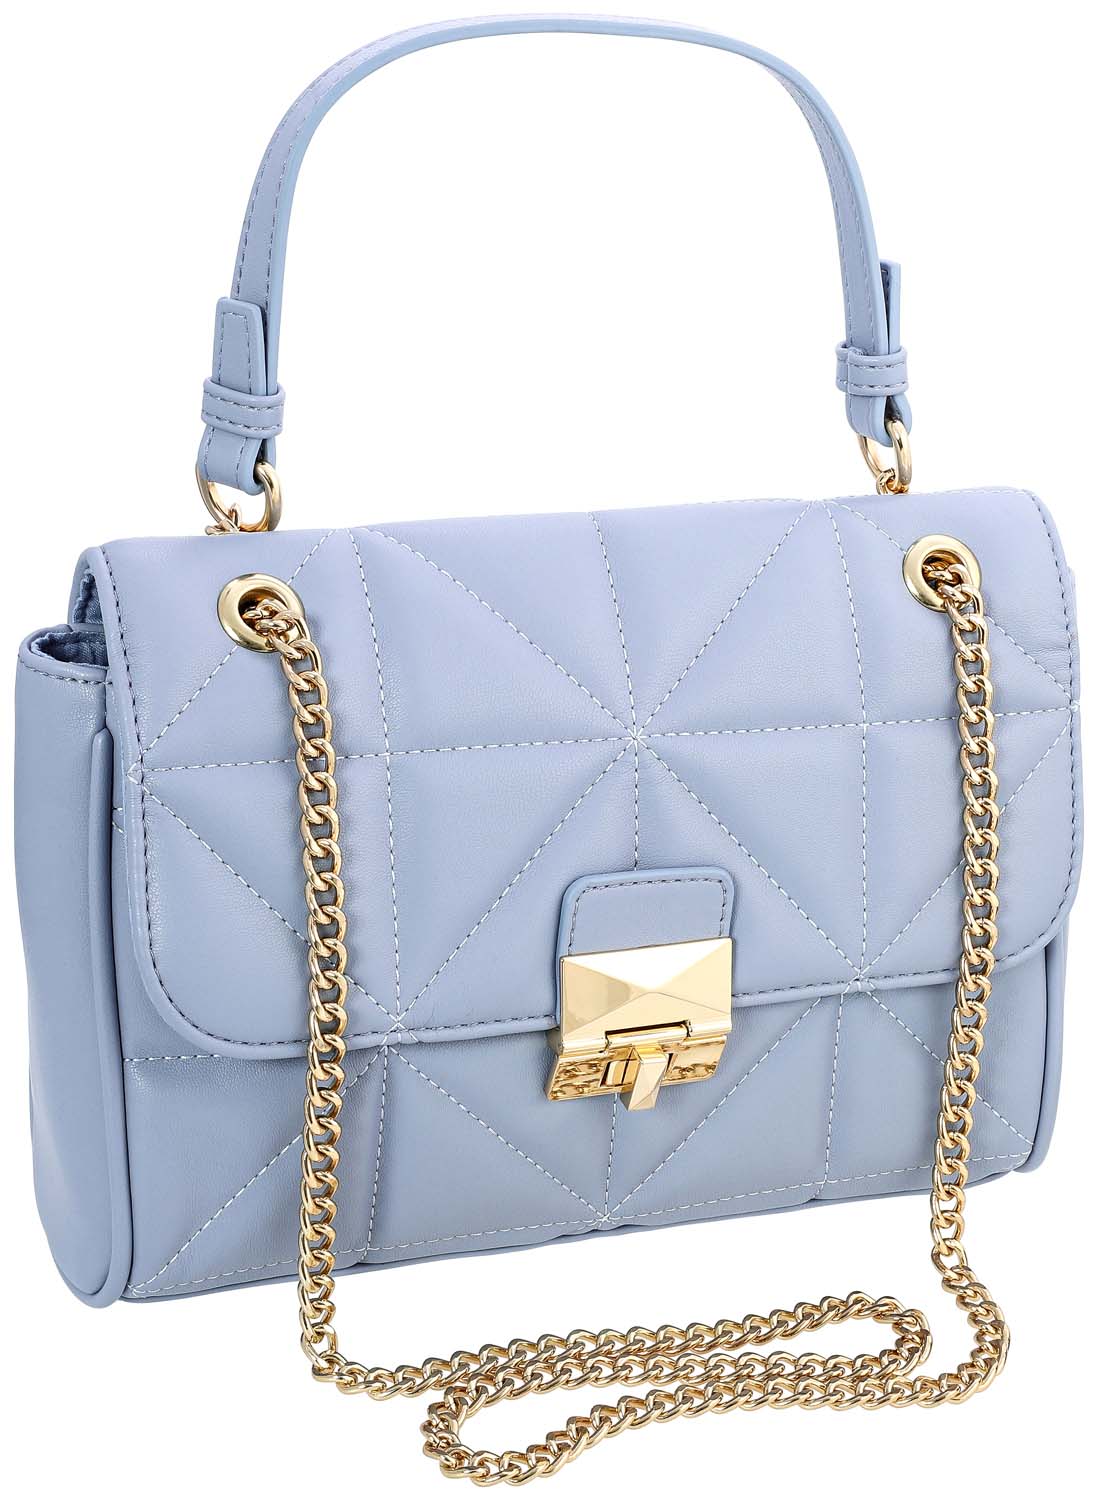 Tasche - Elegant Blue